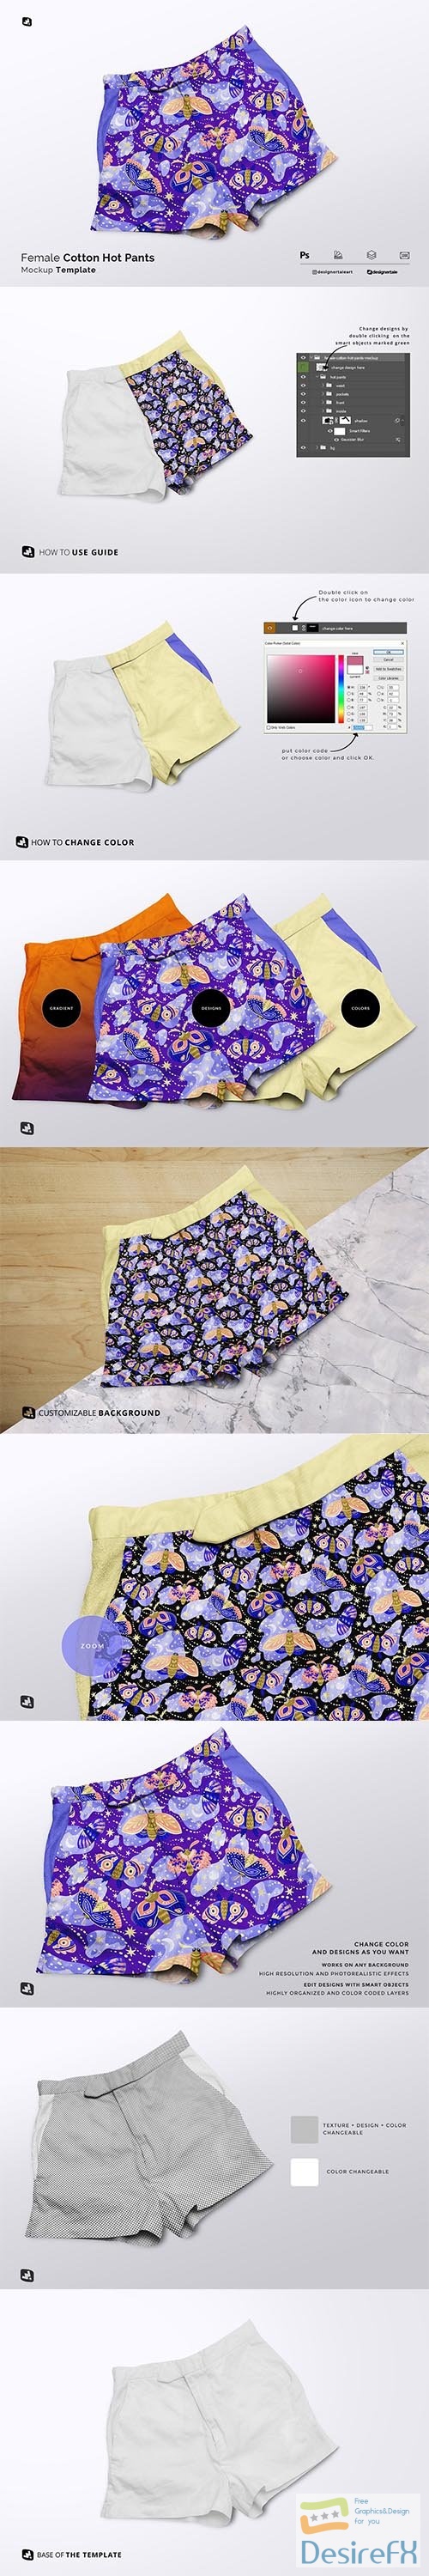 CreativeMarket - Female Cotton Hot Pants Mockup 6211883